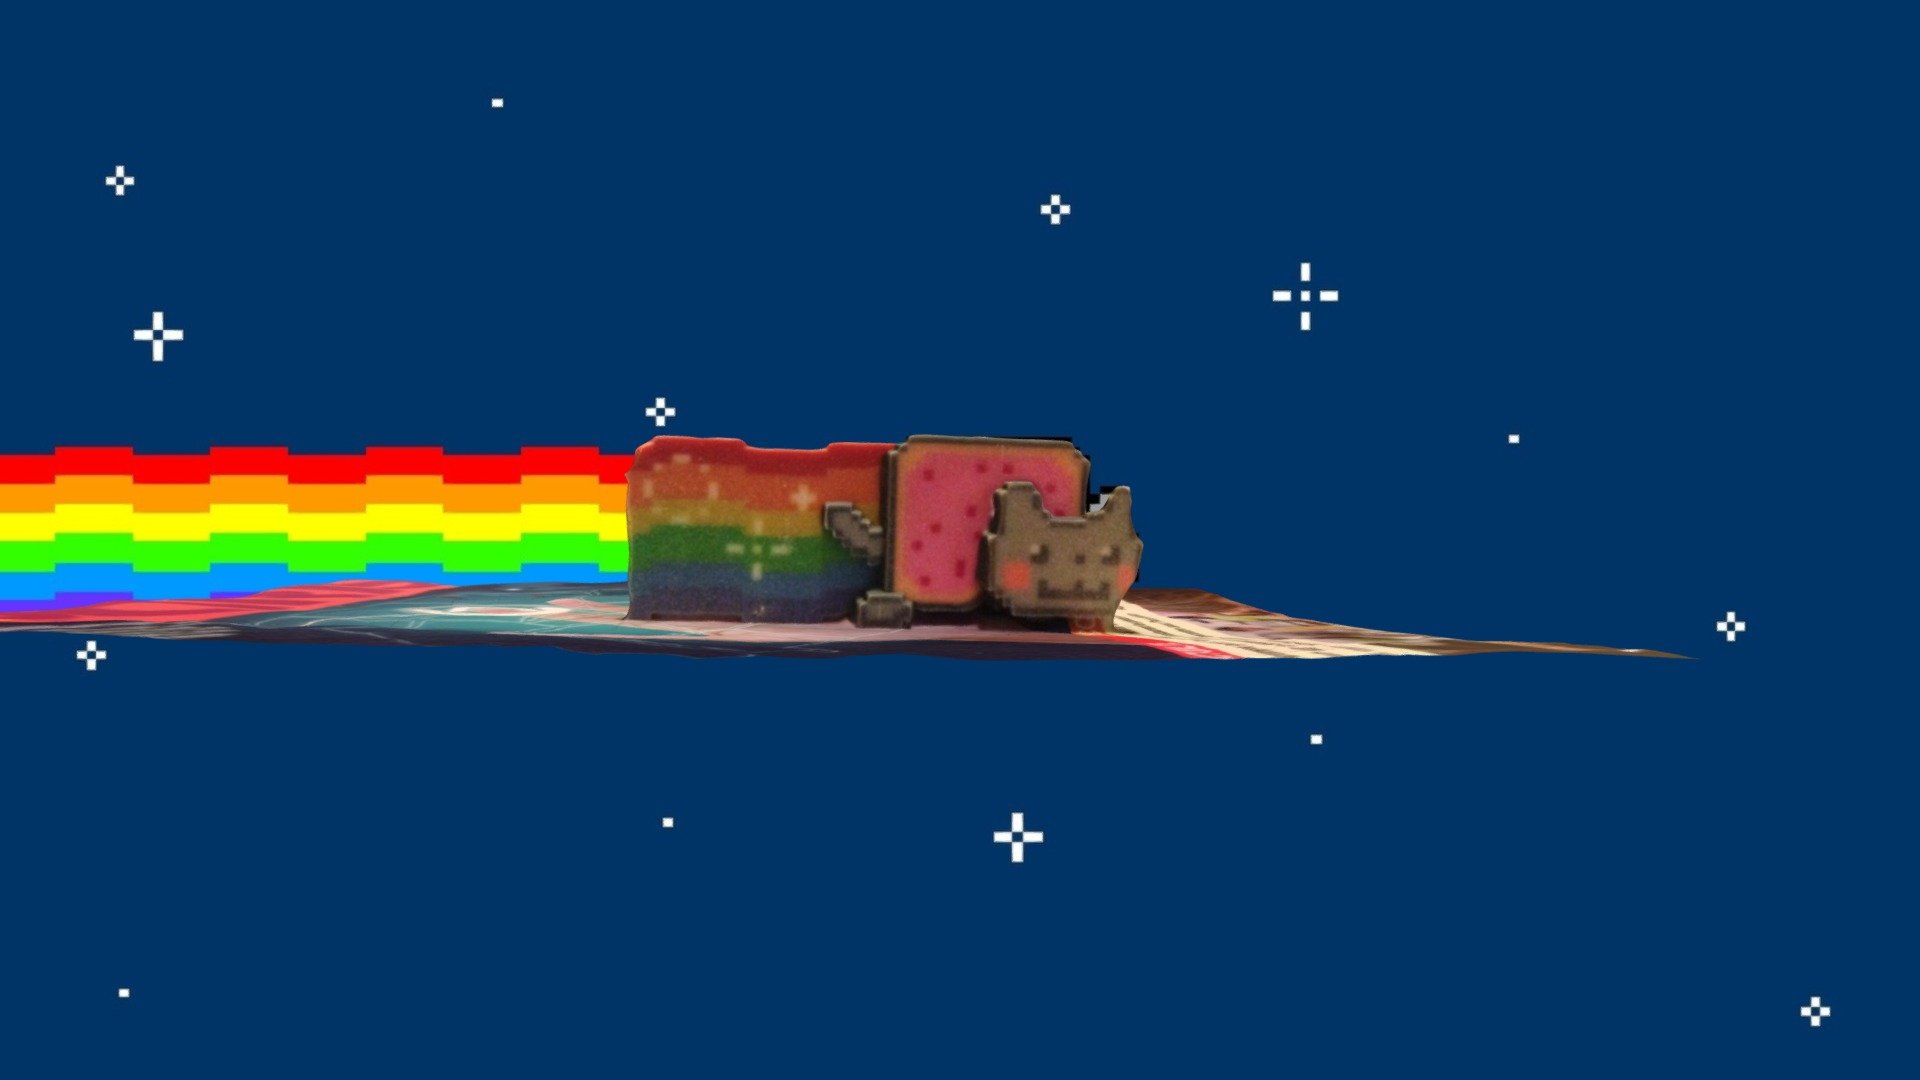 3D printed Nyan Cat #3DST15